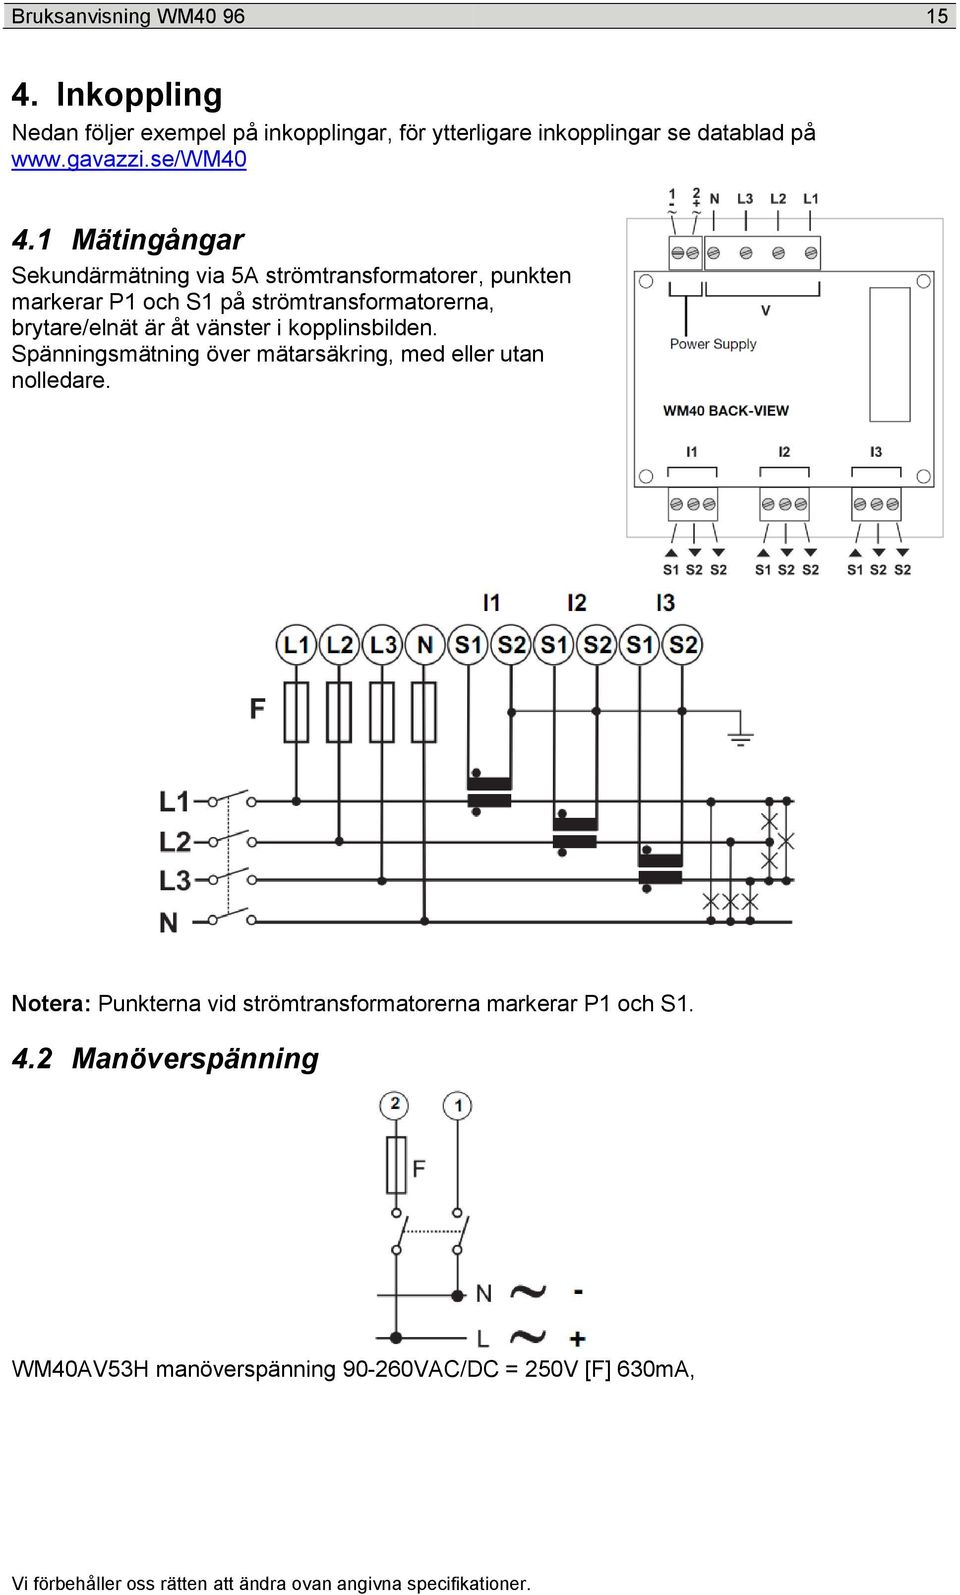 1 Mätingångar Sekundärmätning via 5A strömtransformatorer, punkten markerar P1 och S1 på strömtransformatorerna, brytare/elnät